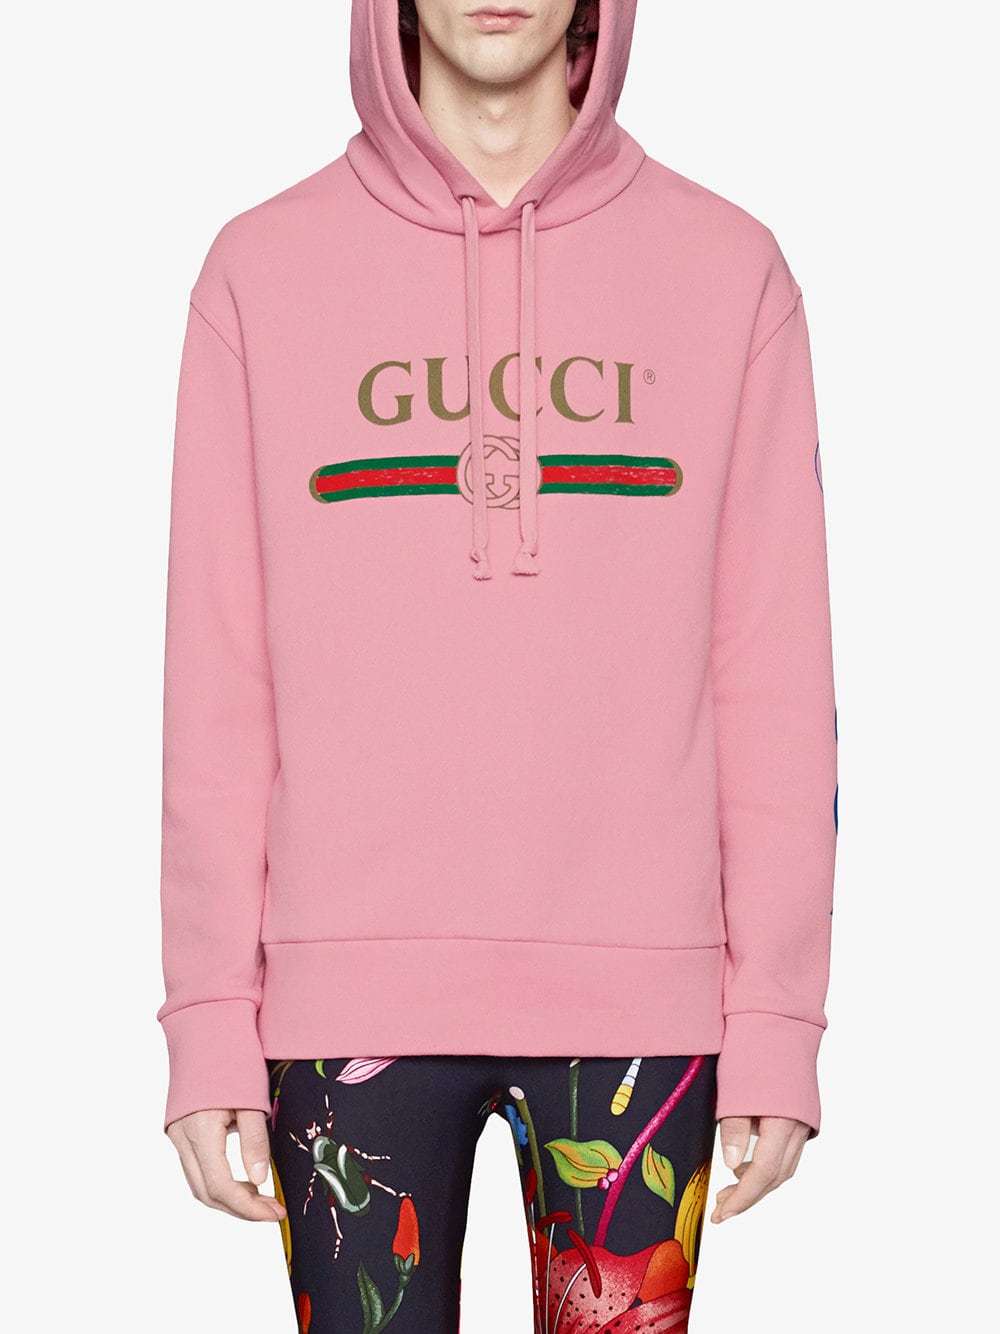 Gucci Logo Sweatshirt With Dragon, $2 